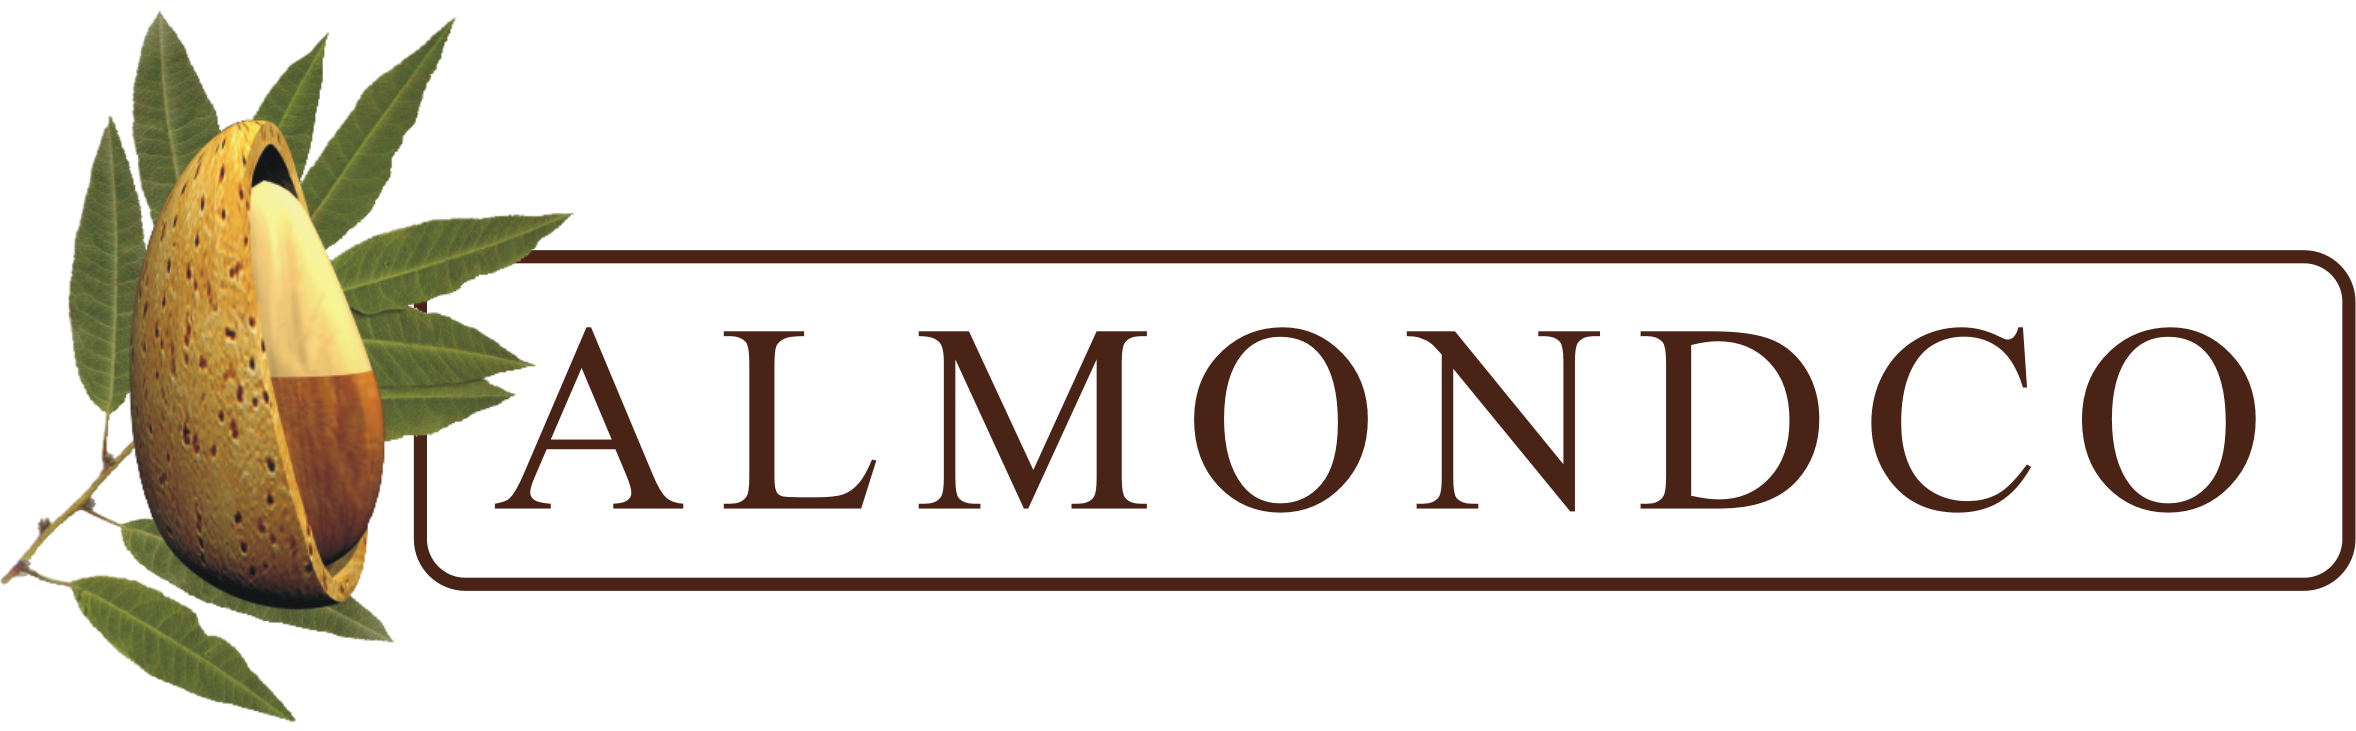 Almondco Australia Ltd